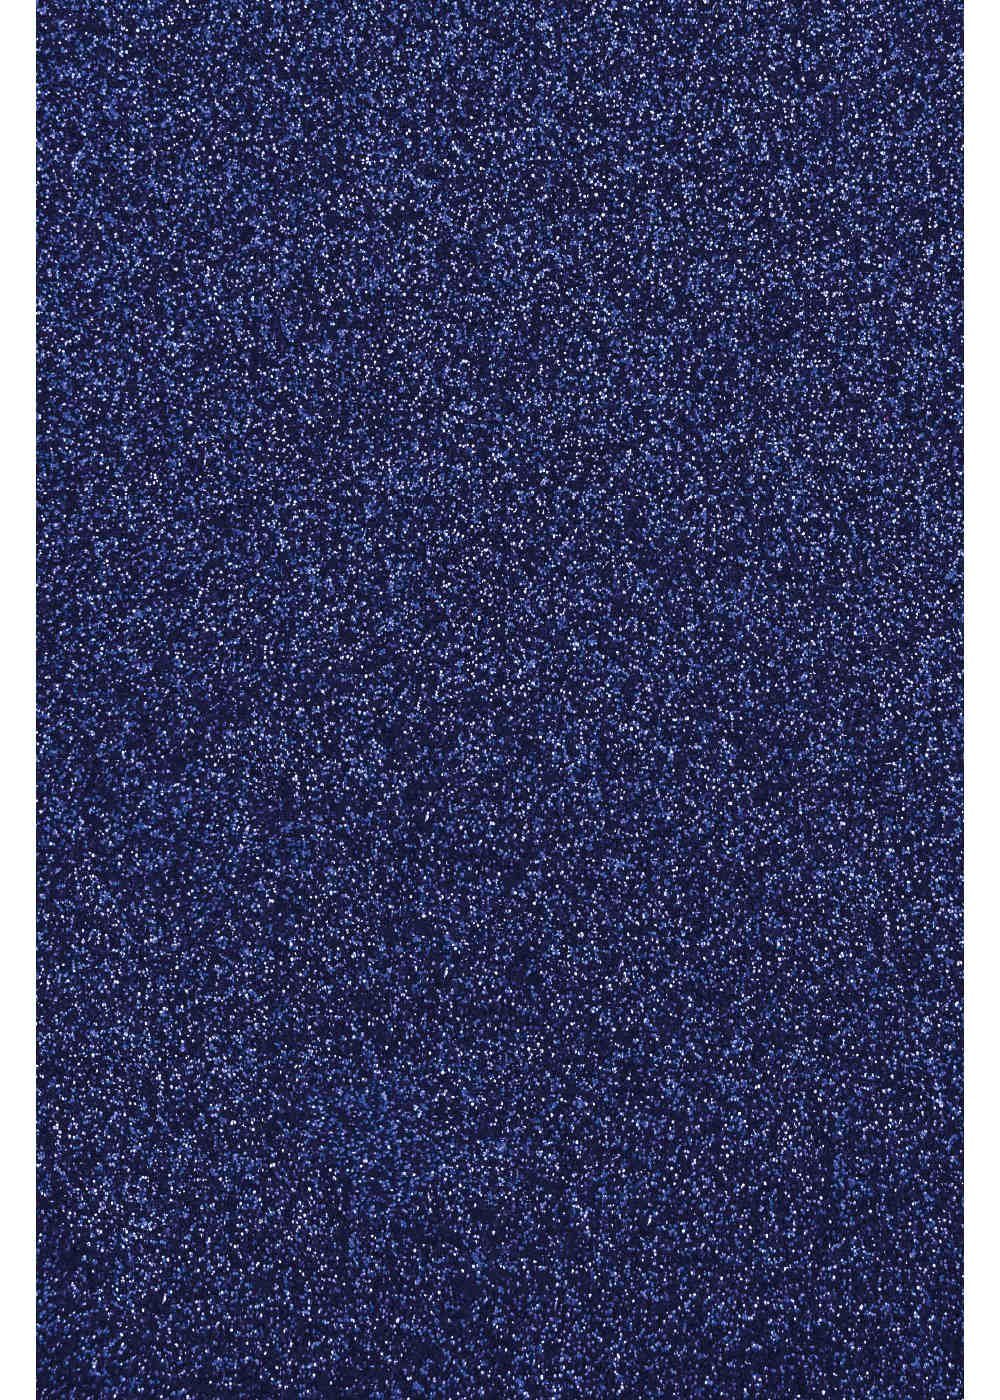 Glitzer Blue Transferfolie/Textilfolie Royal zum Plottern zum perfekt Transparentpapier Hilltop Aufbügeln,